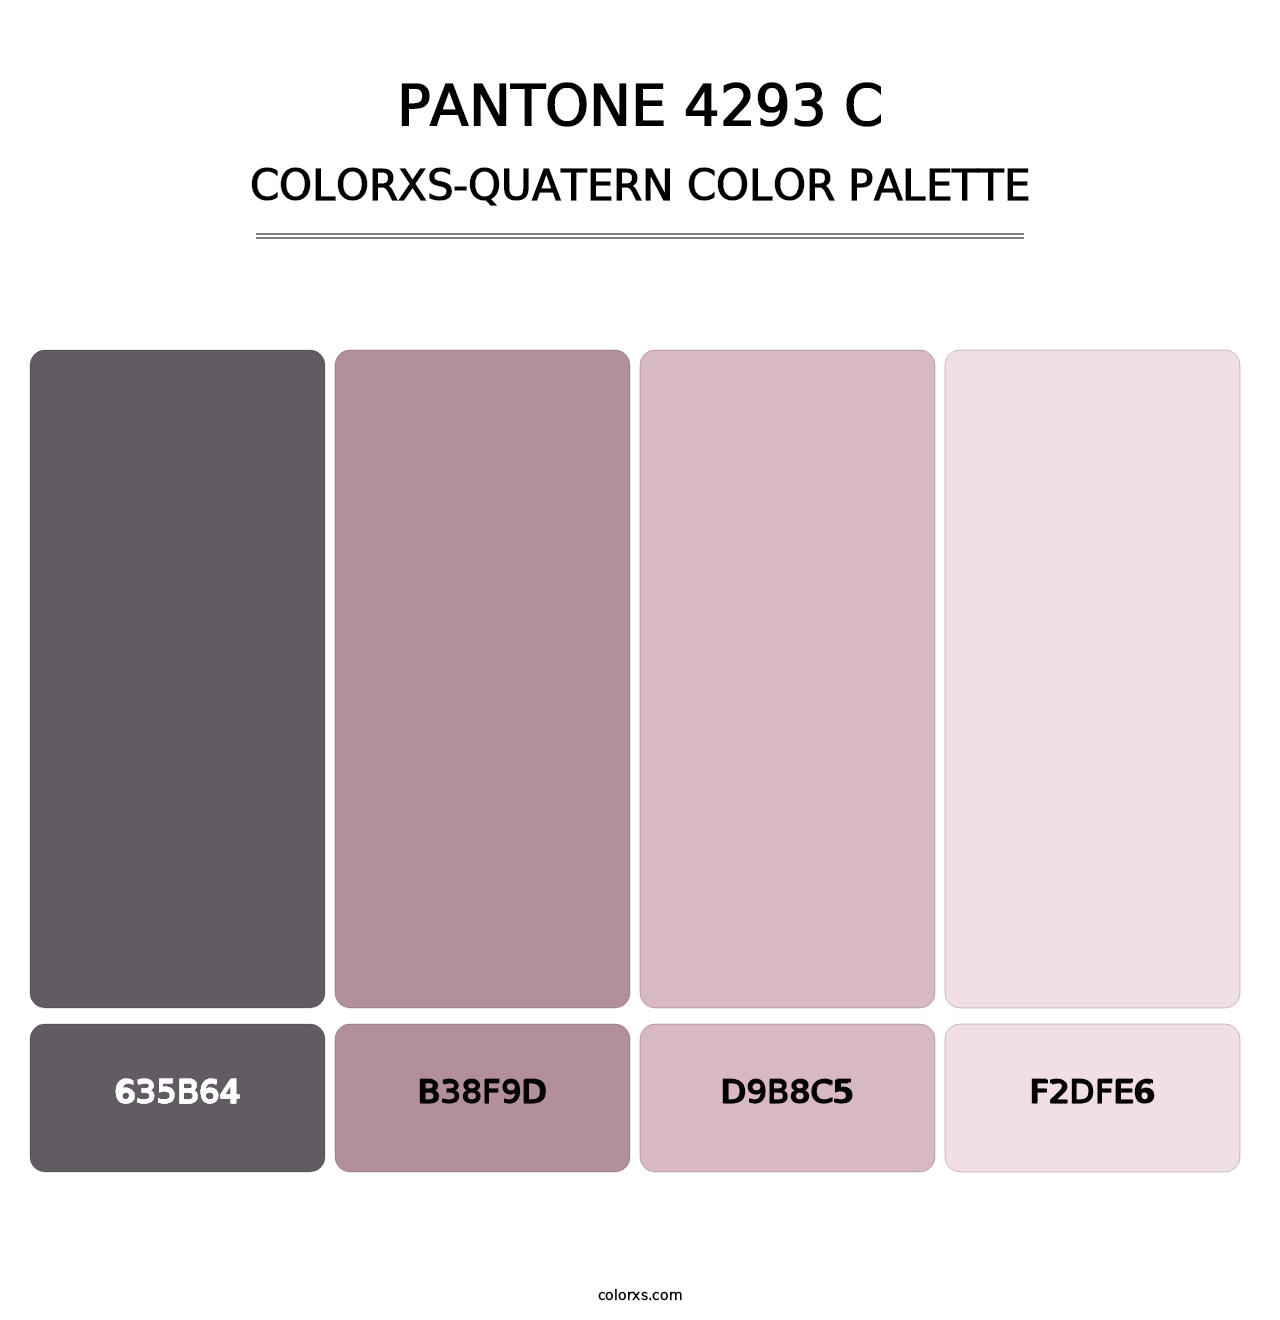 PANTONE 4293 C - Colorxs Quatern Palette